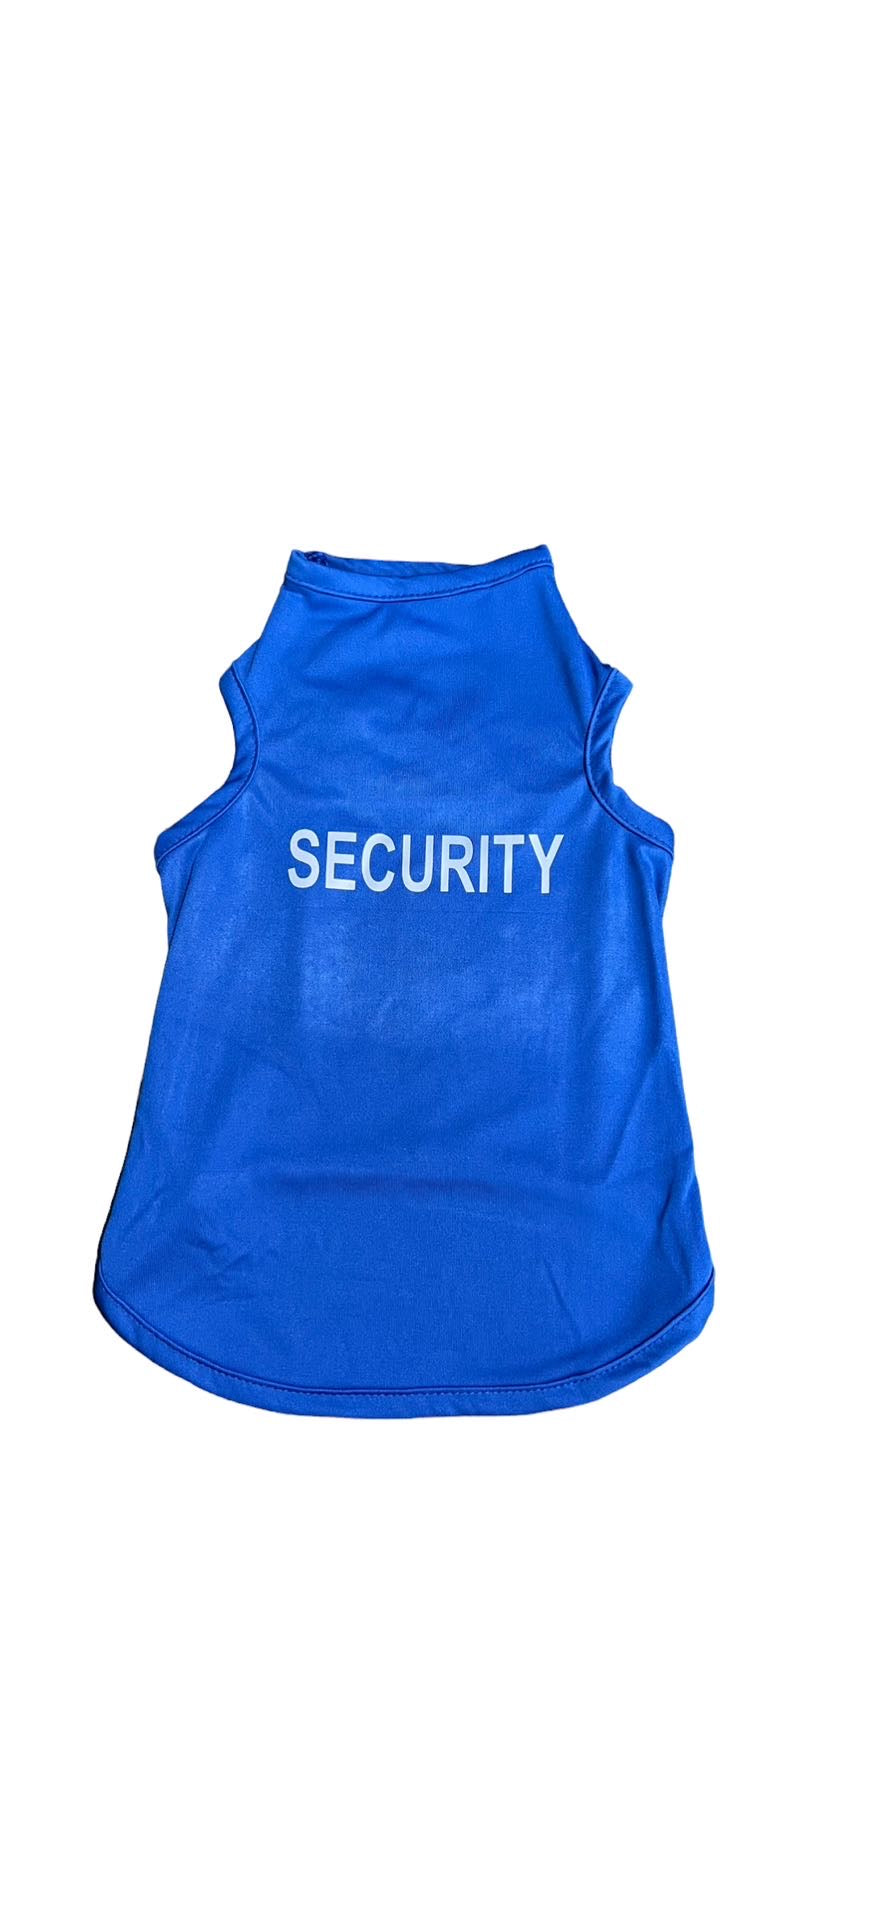 Security pet shirt - BLUE 🚔